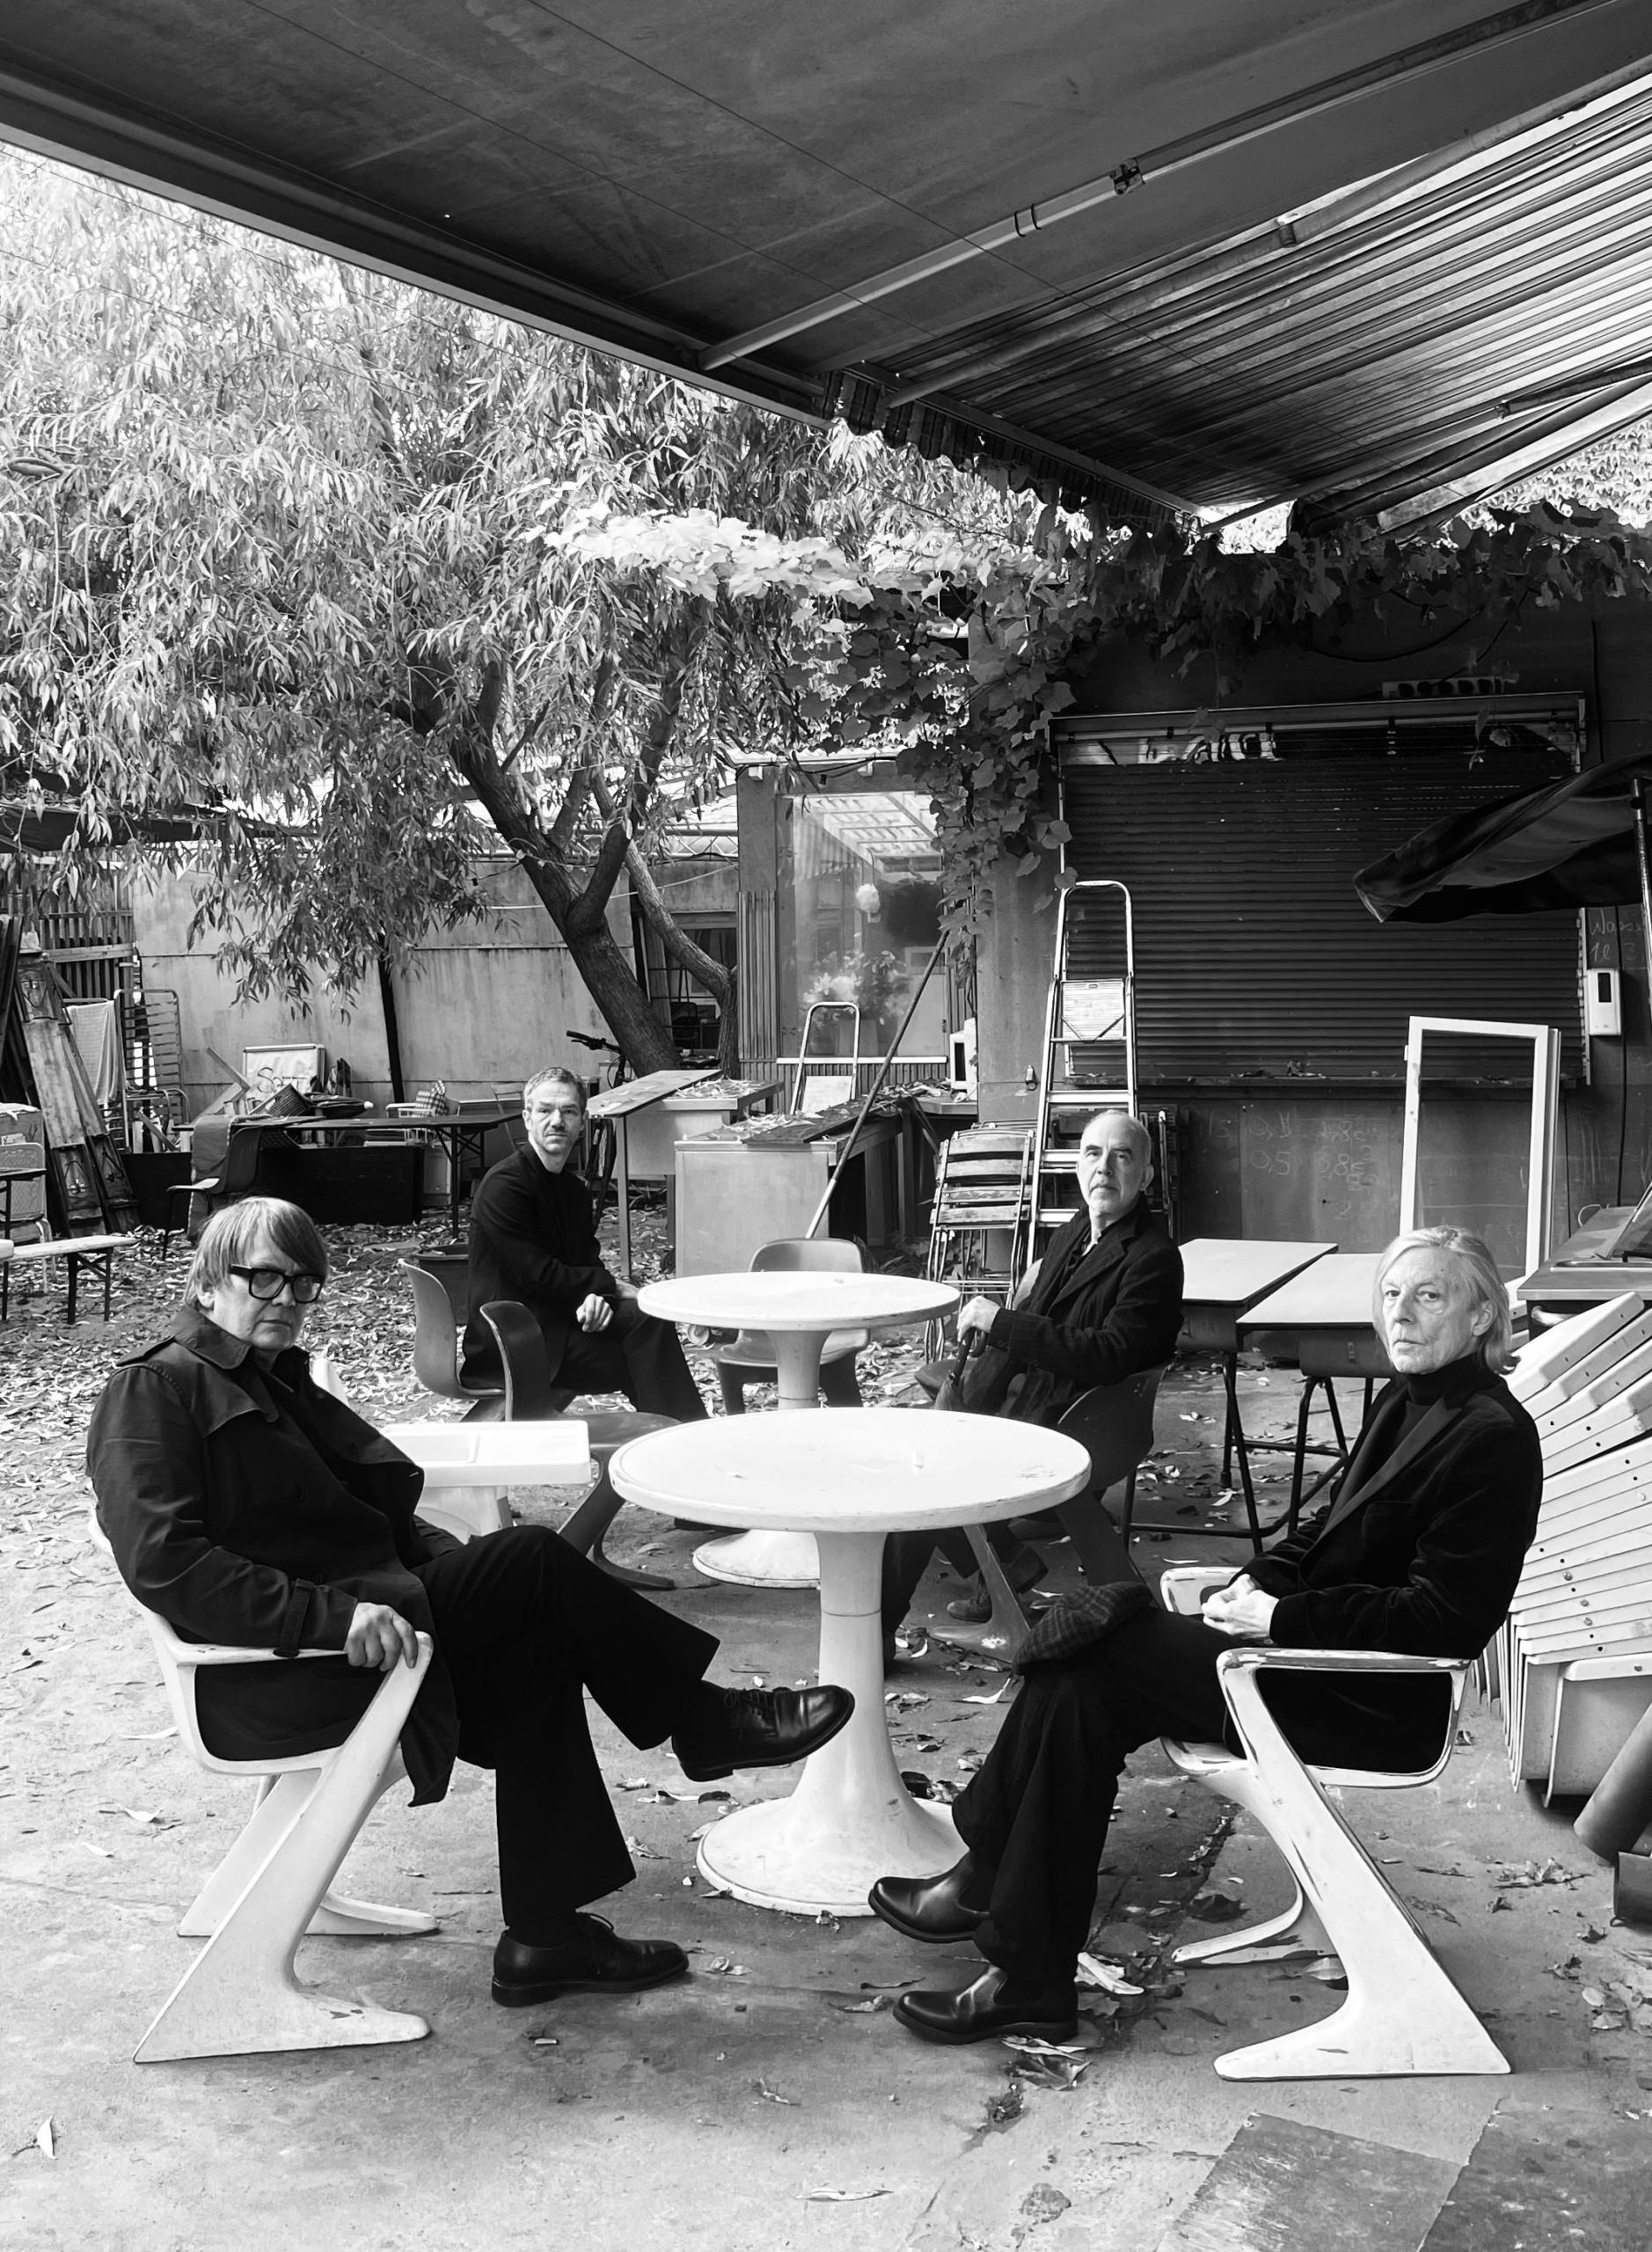 Die 4 Musiker der Band Element of Crime sitzen auf Stühlen um zwei kleine Tische herum unter einem Dachvorsprung. Im Hintergrund ist ein Garten zu sehen.